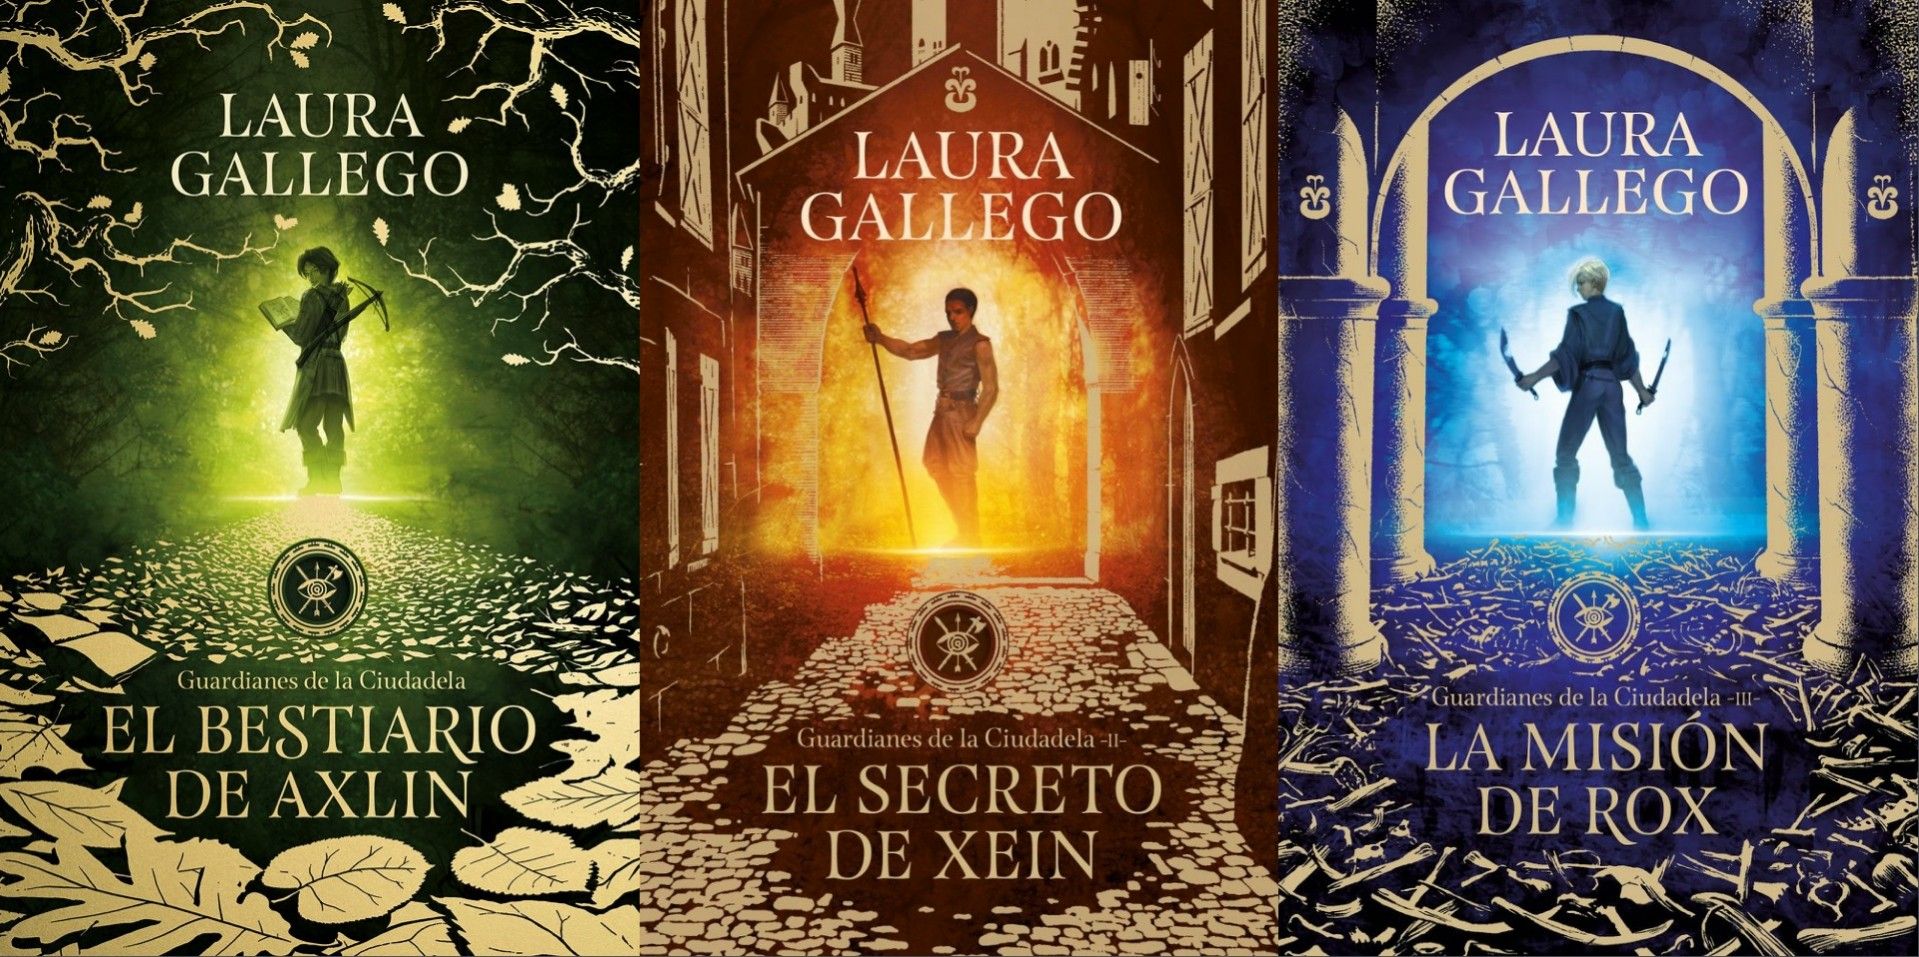 Libro: El Secreto de Xein - Libro 2 de 3: Guardianes de la Ciudadela II por Laura Gallego